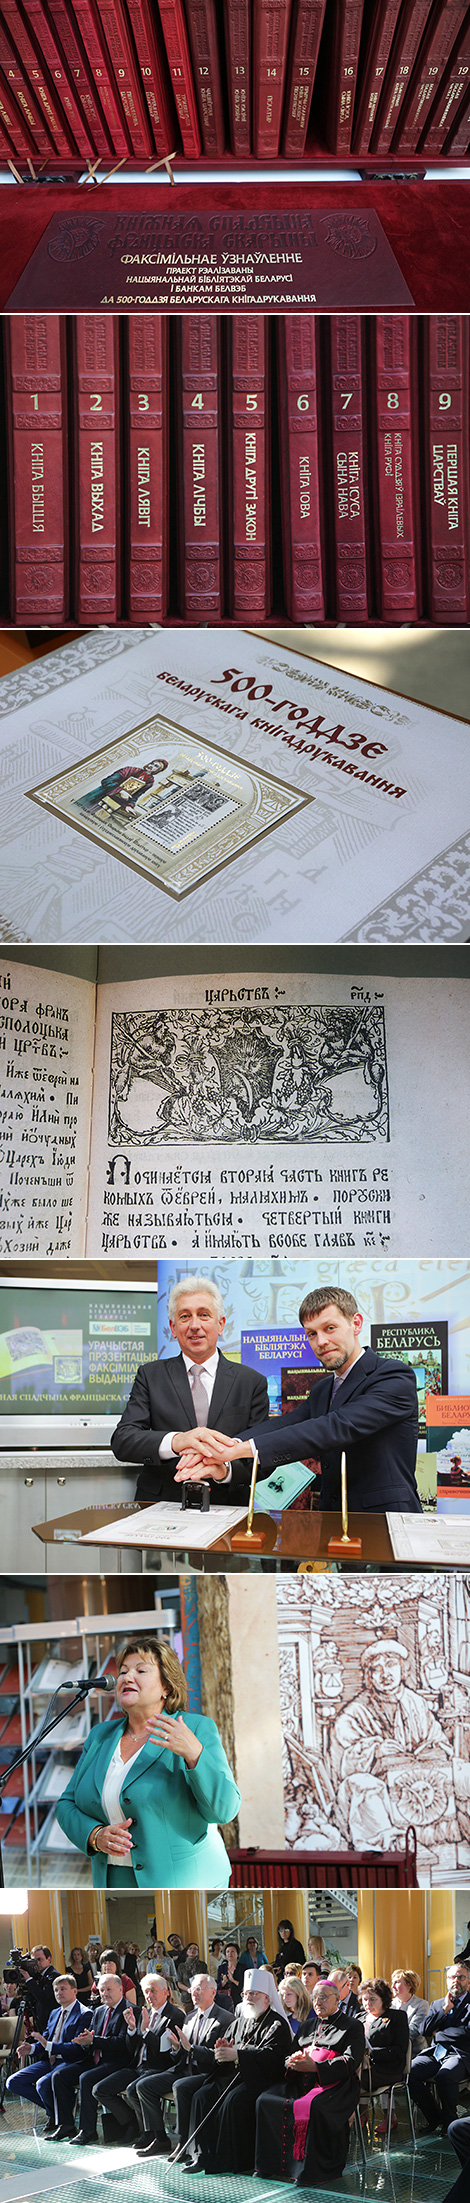 Презентация факсимильного издания "Книжное наследие Франциска Скорины" в Национальной библиотеке Беларуси